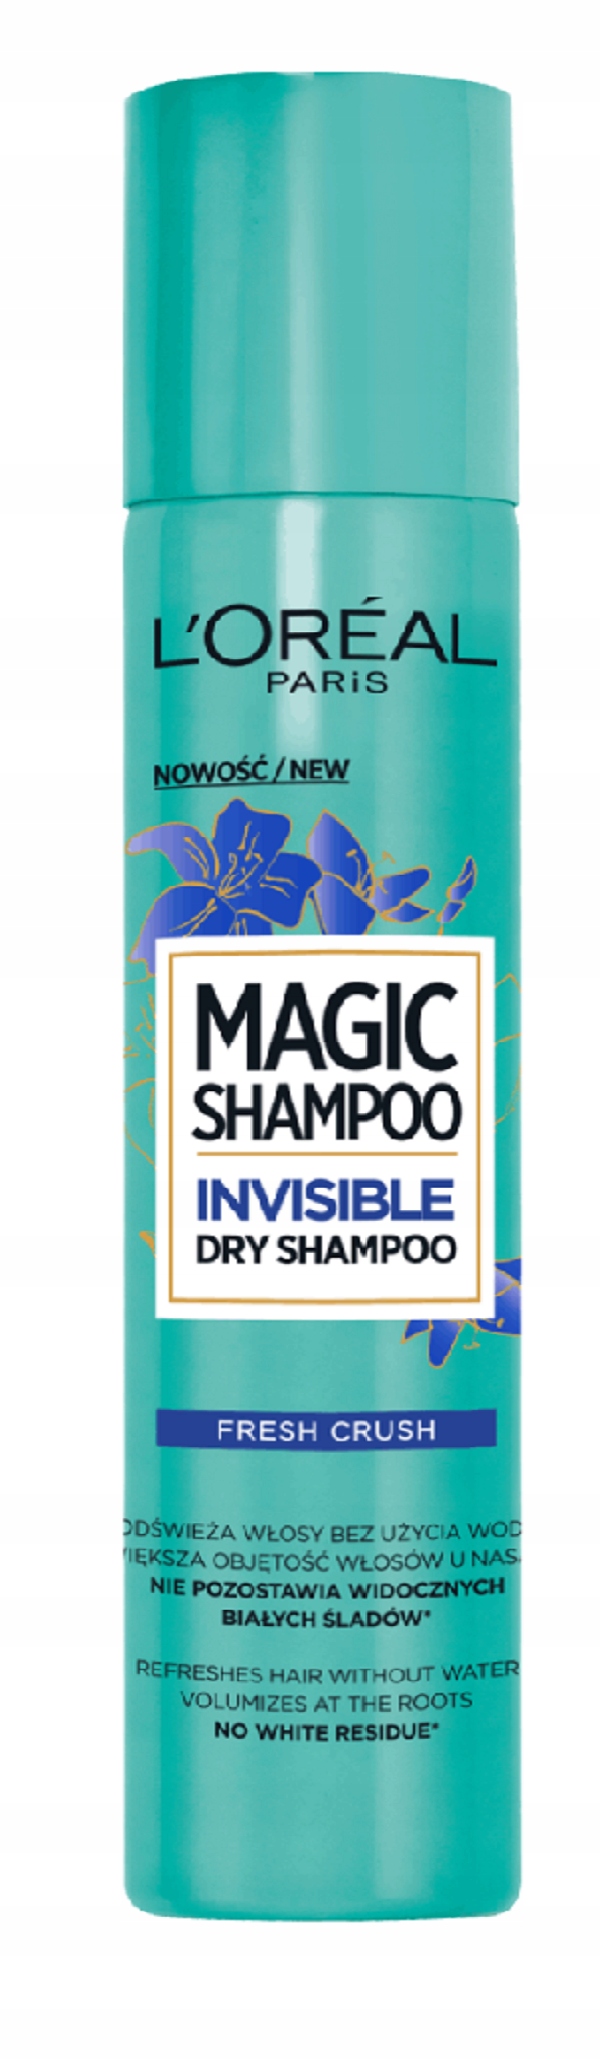 niewidzialny suchy szampon loreal